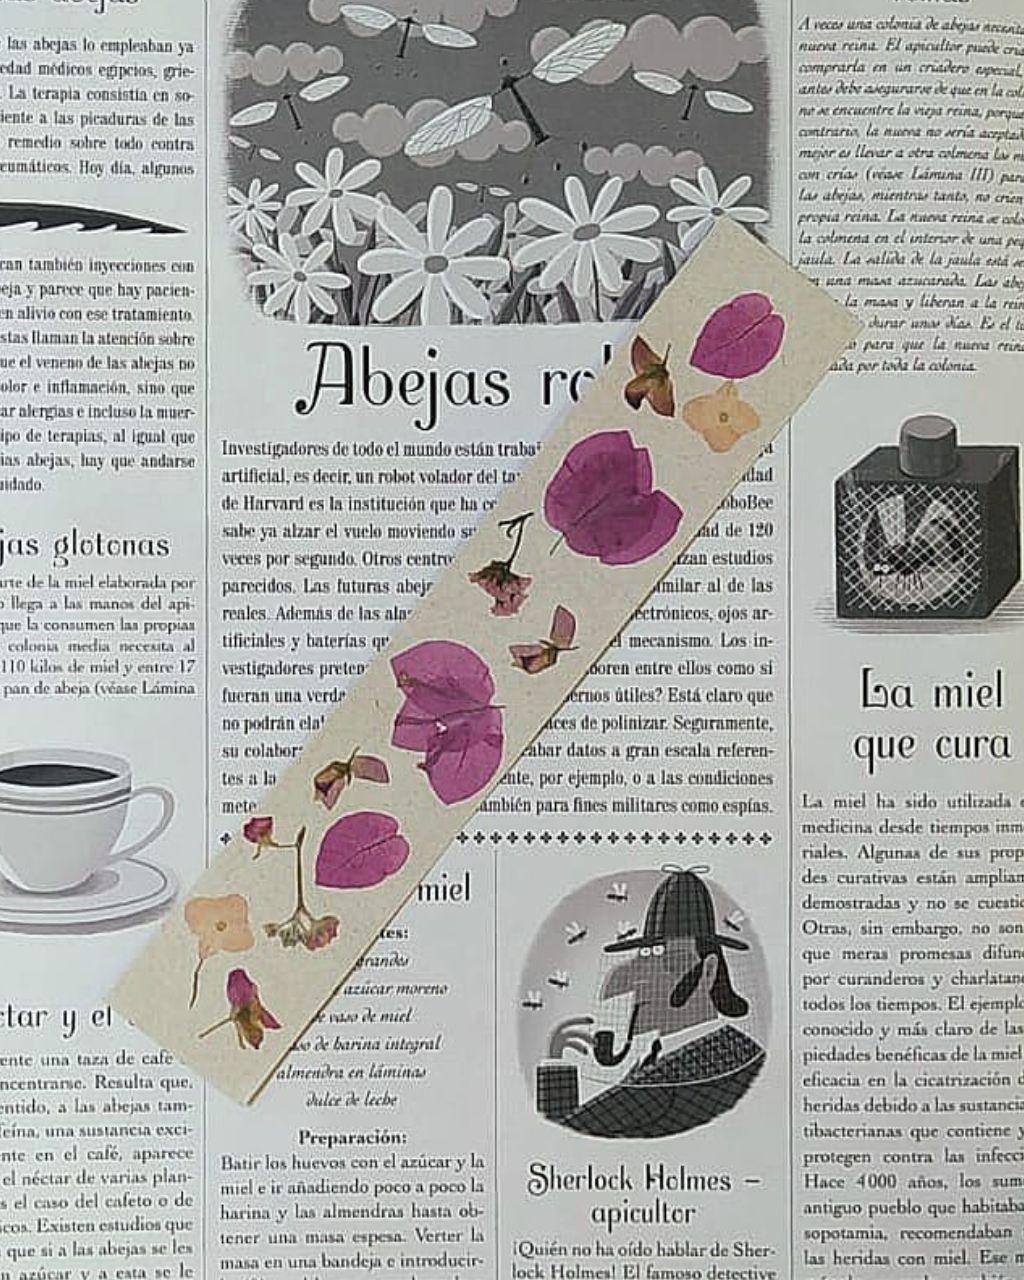 Bookmark con print de flores colombianas en tonos rosados sobre papel color crudo.